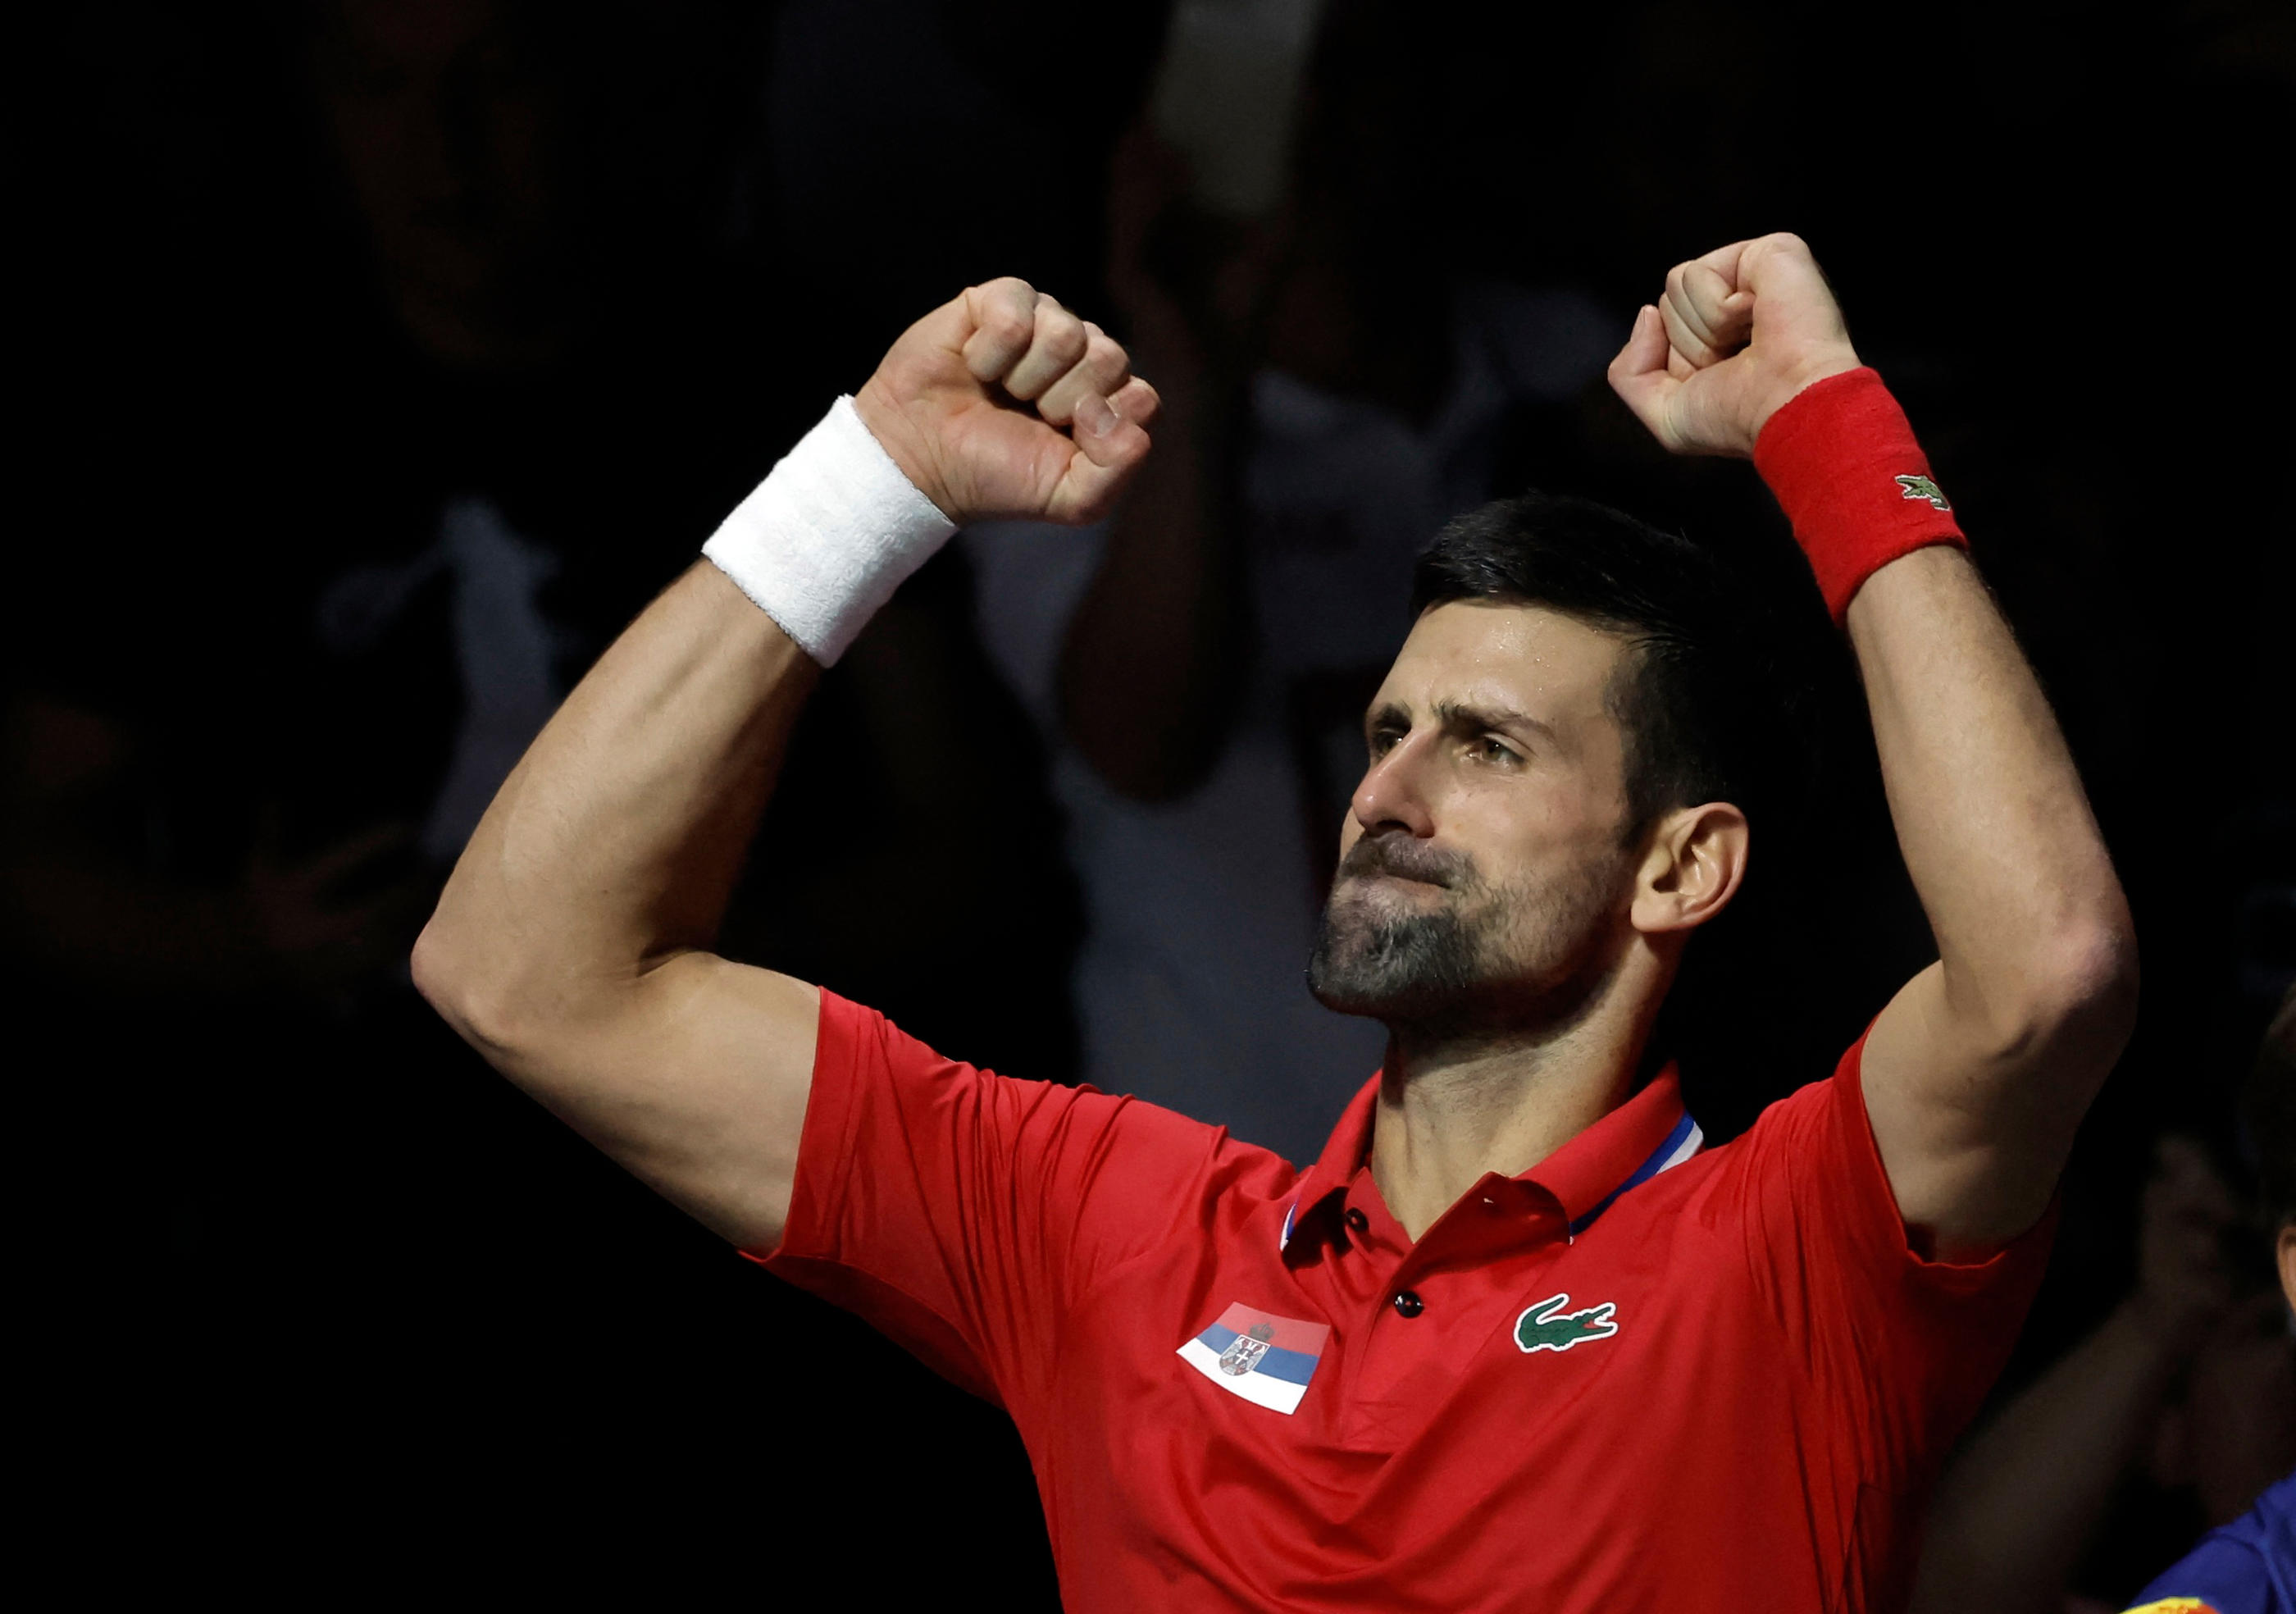 Novak Djokovic a évoqué un "manque de respect" d'une partie du public lors du quart de finale de Coupe Davis remporté face au Britannique Cameron Norrie. Photo REUTERS/Jon Nazca